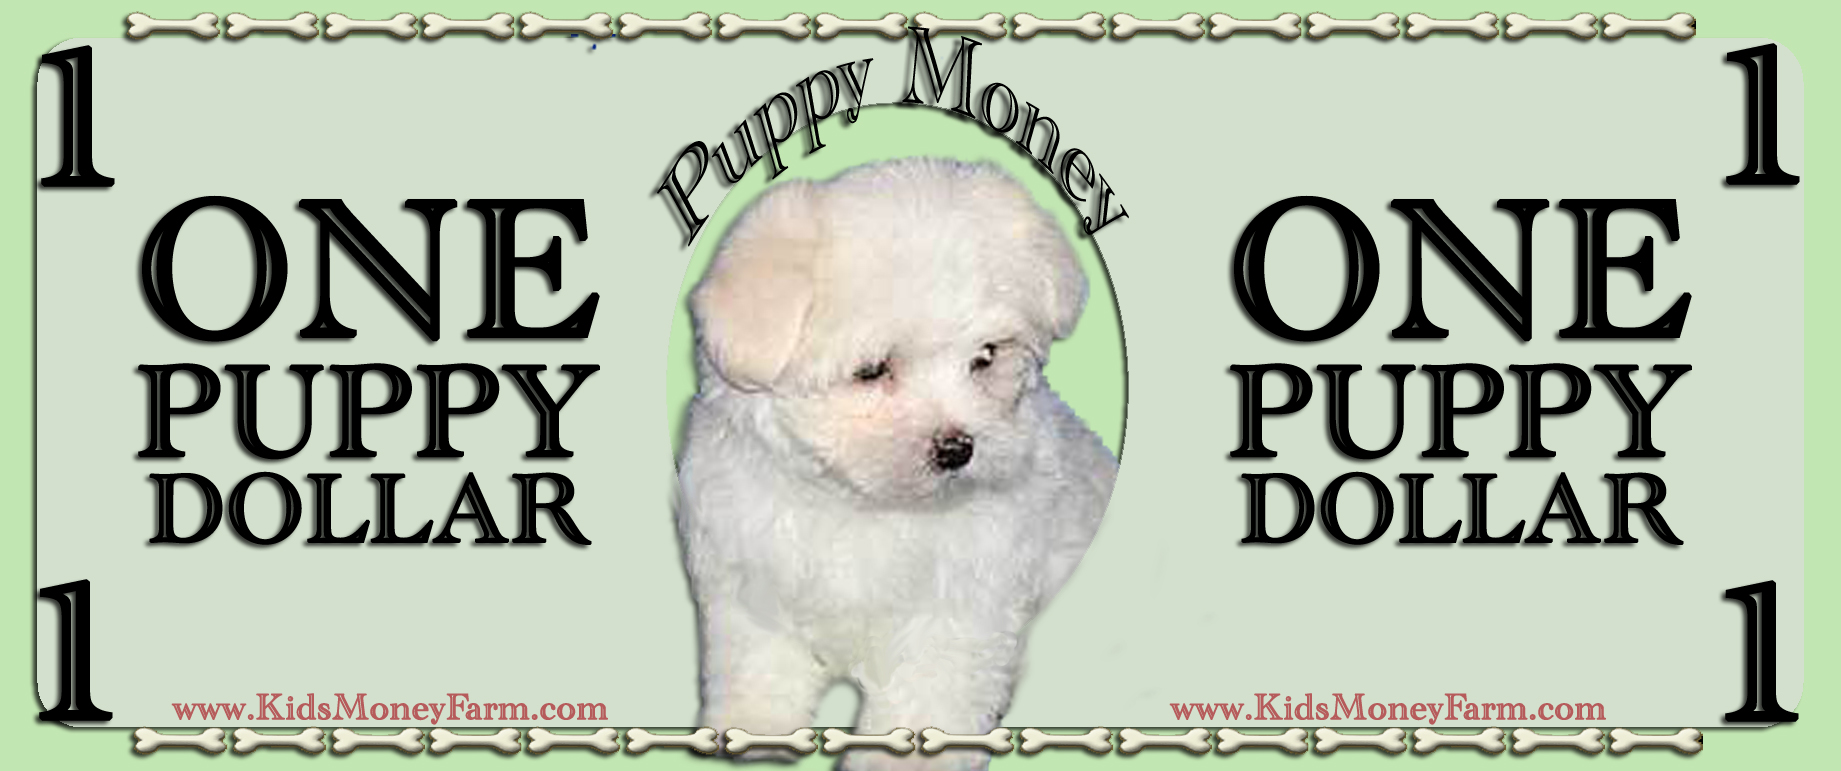 Play Money Printable Template from www.kidsmoneyfarm.com